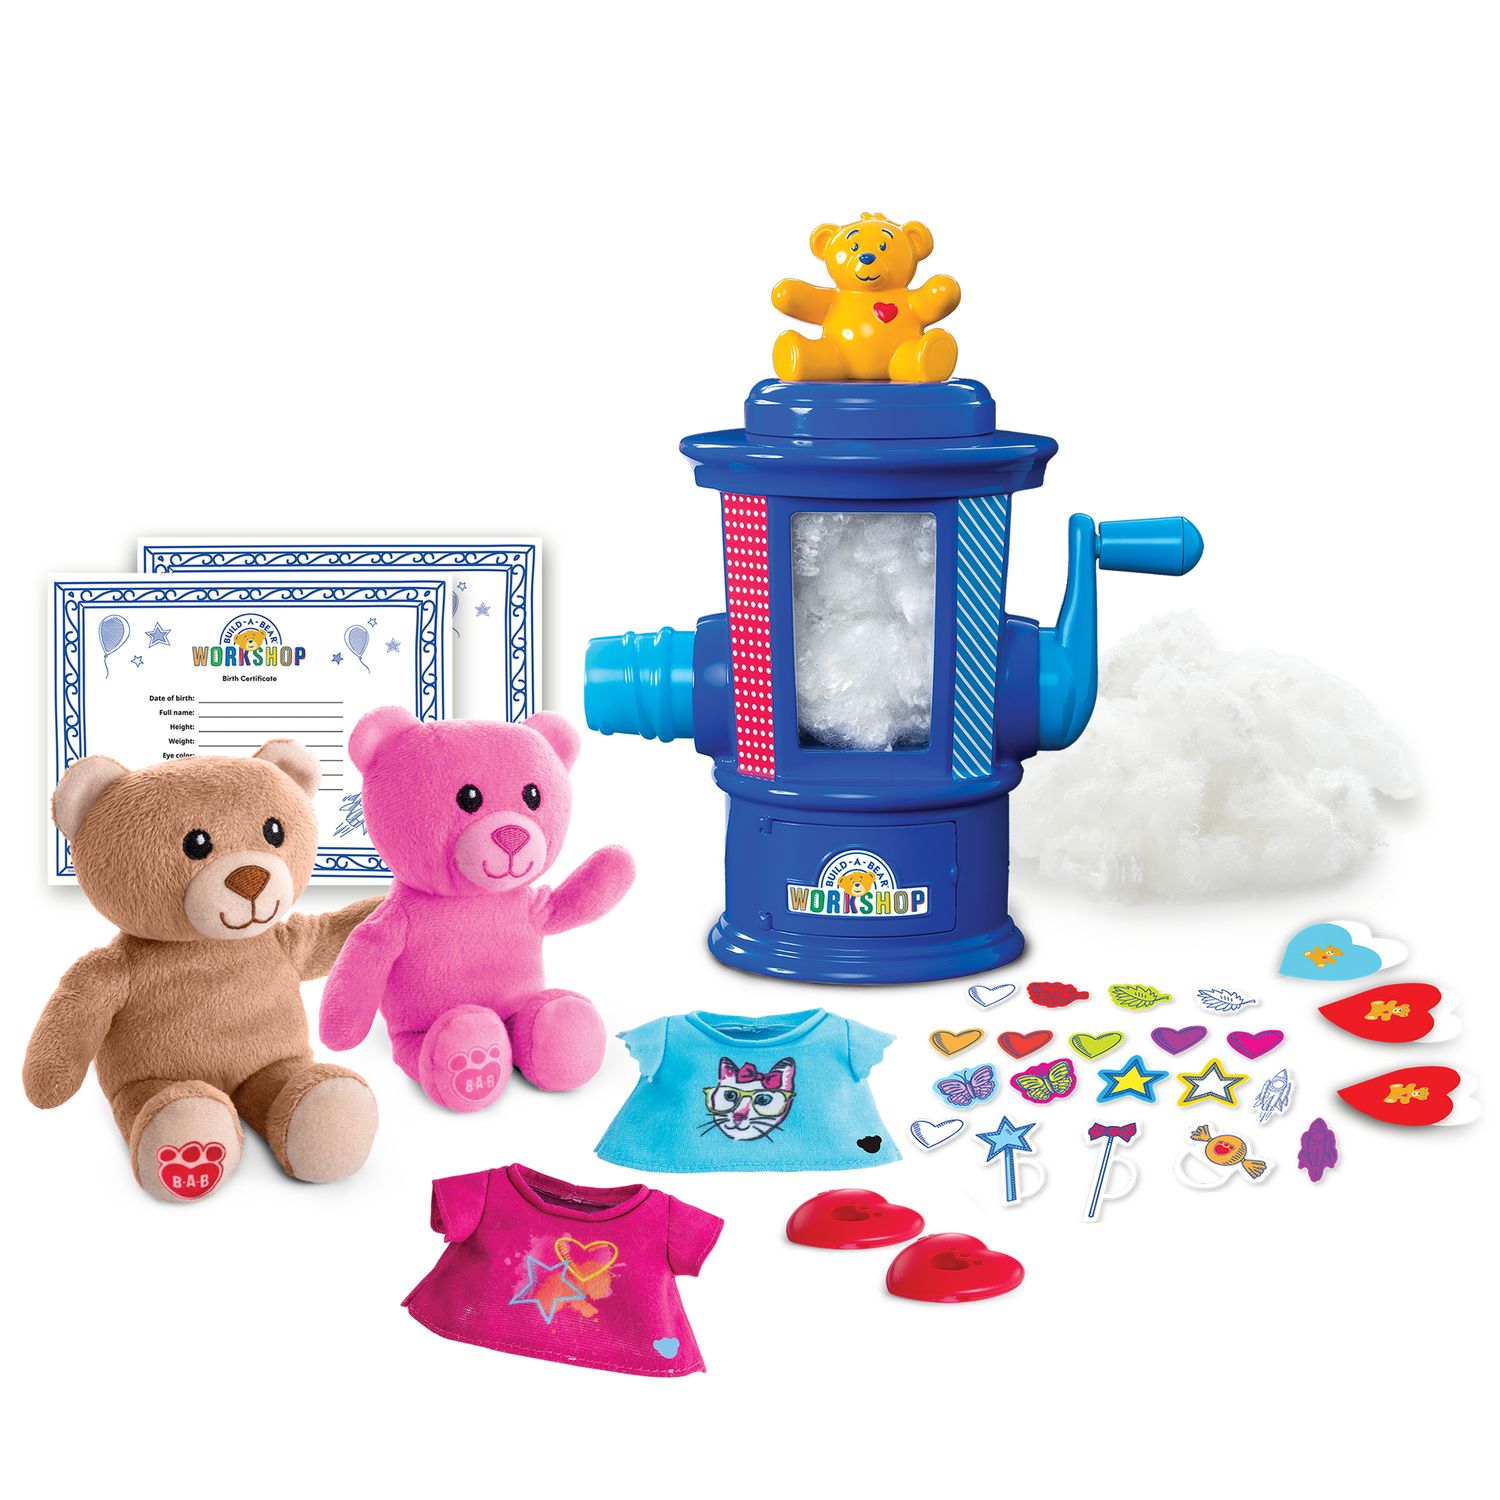 build your own teddy bear kit